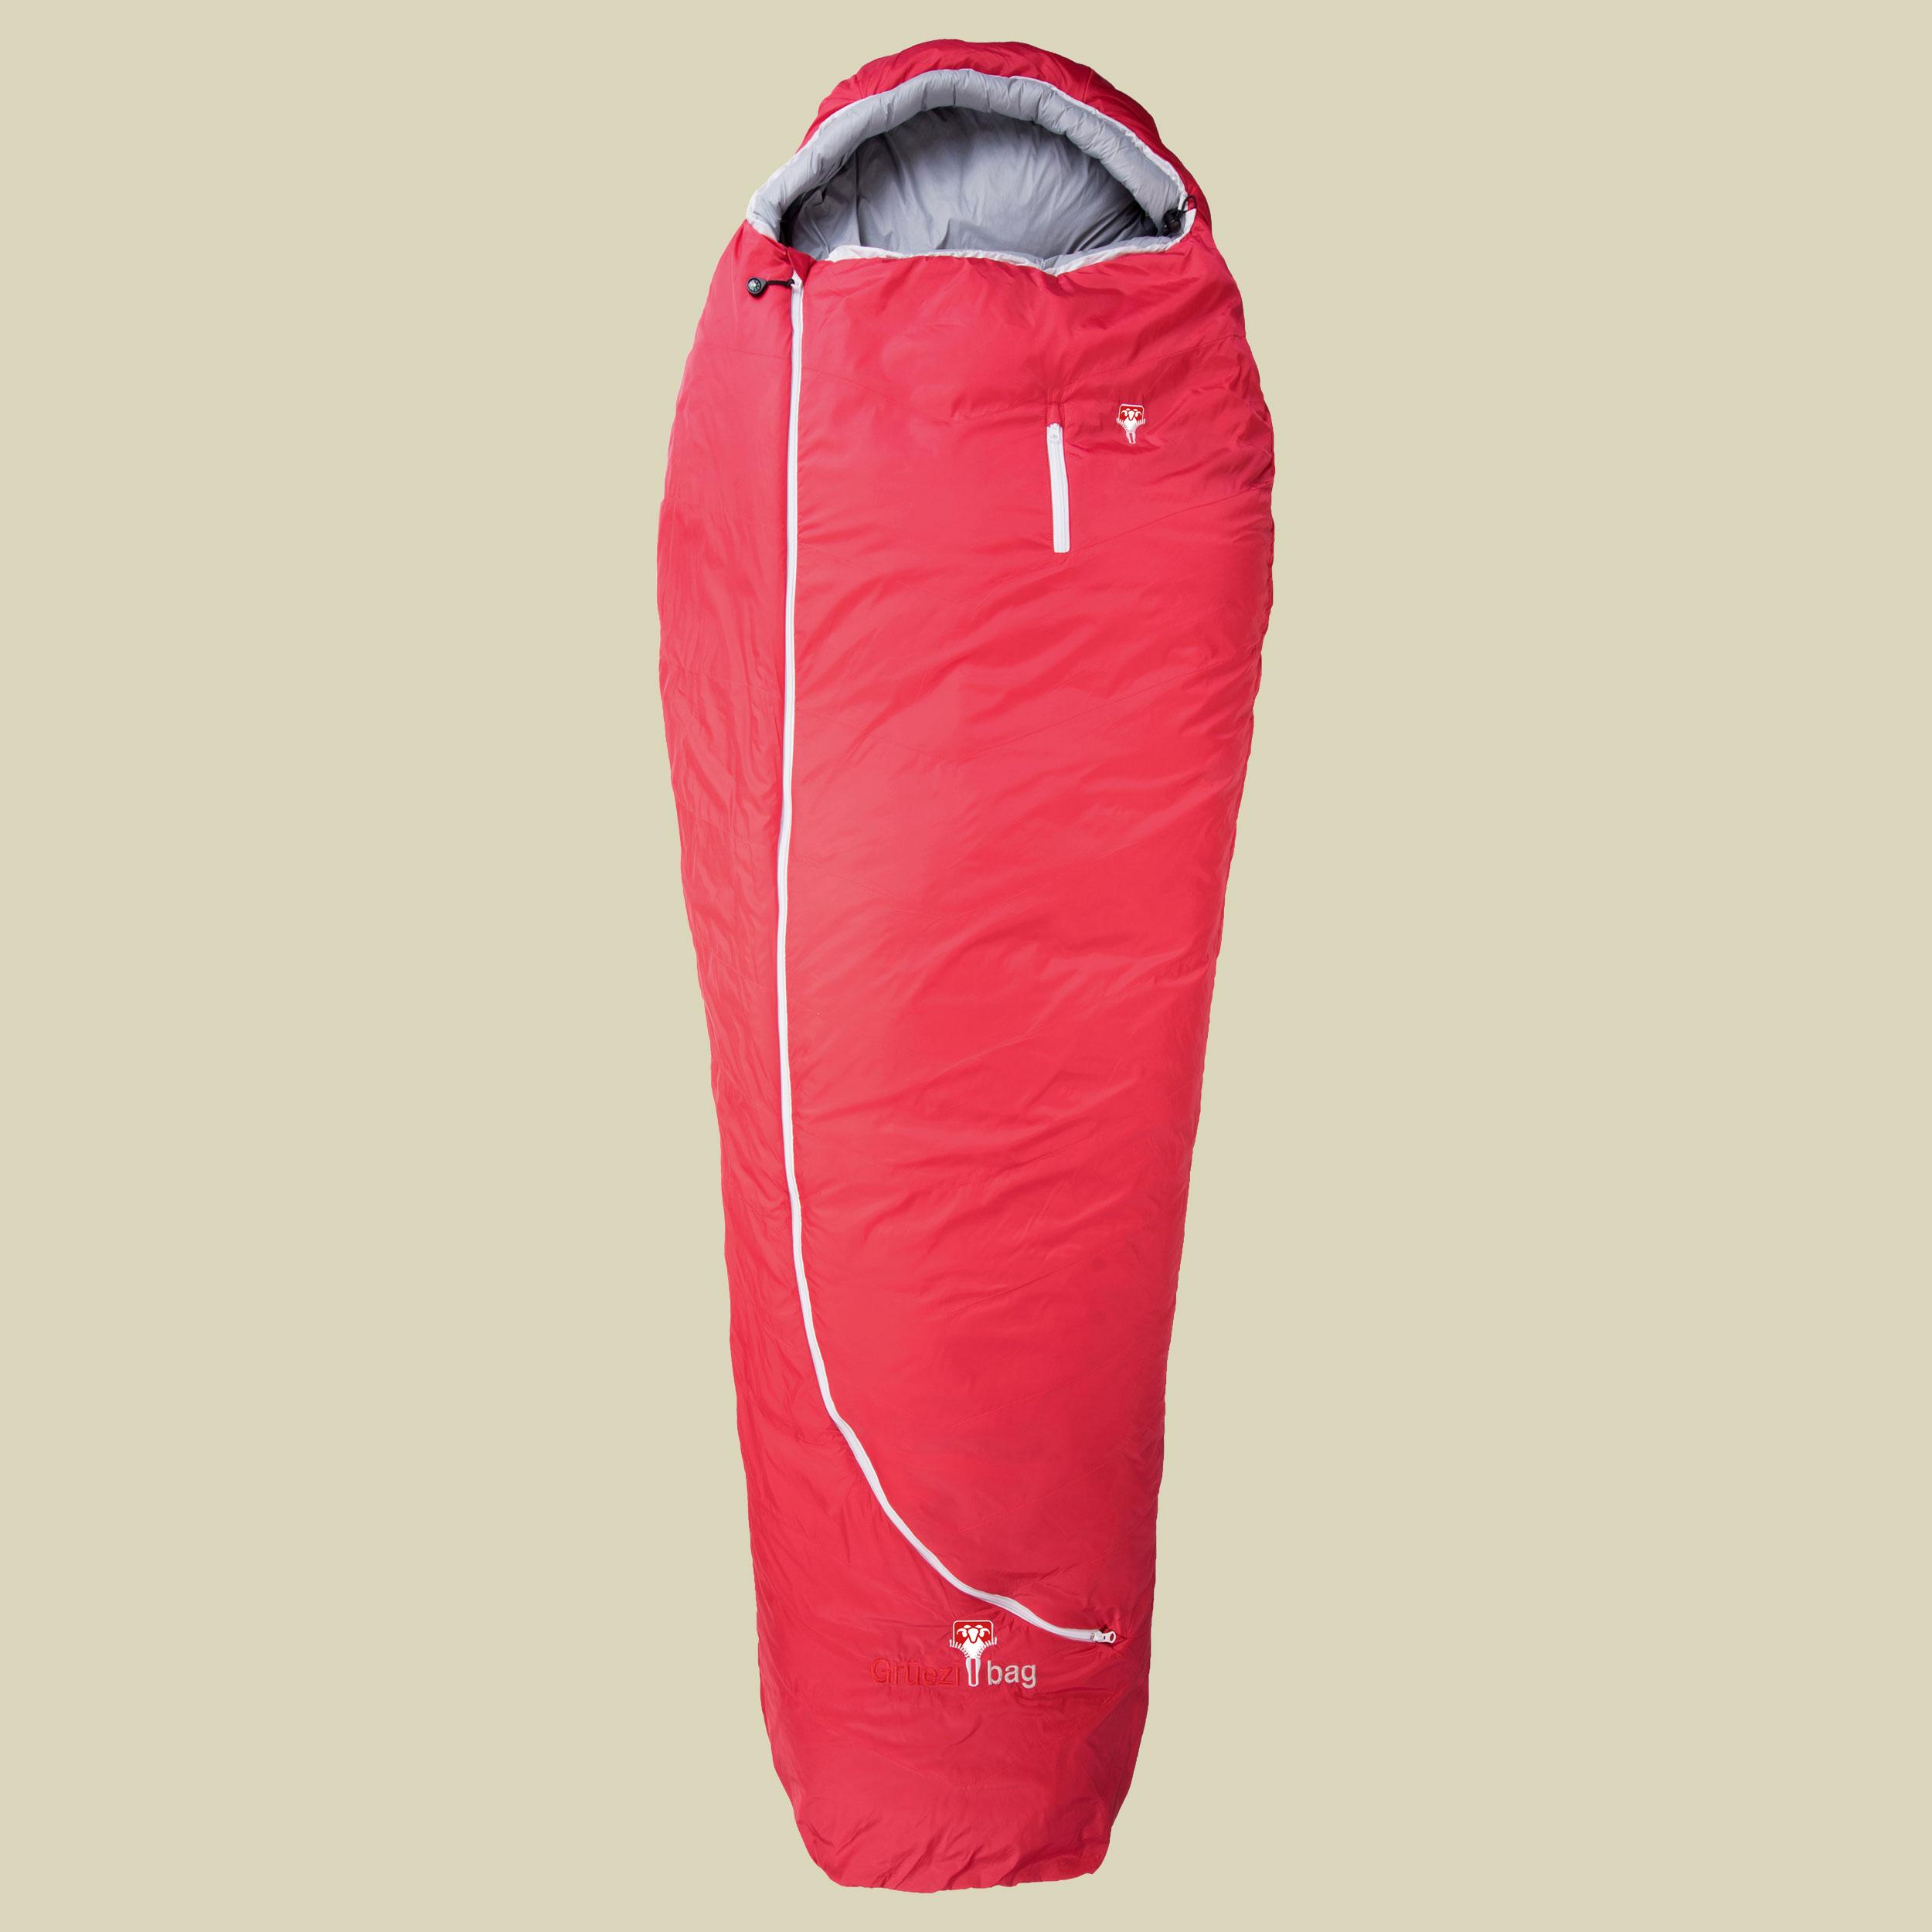 Biopod Wolle Zero bis Körpergröße Schlafsack  185 cm Farbe tango red